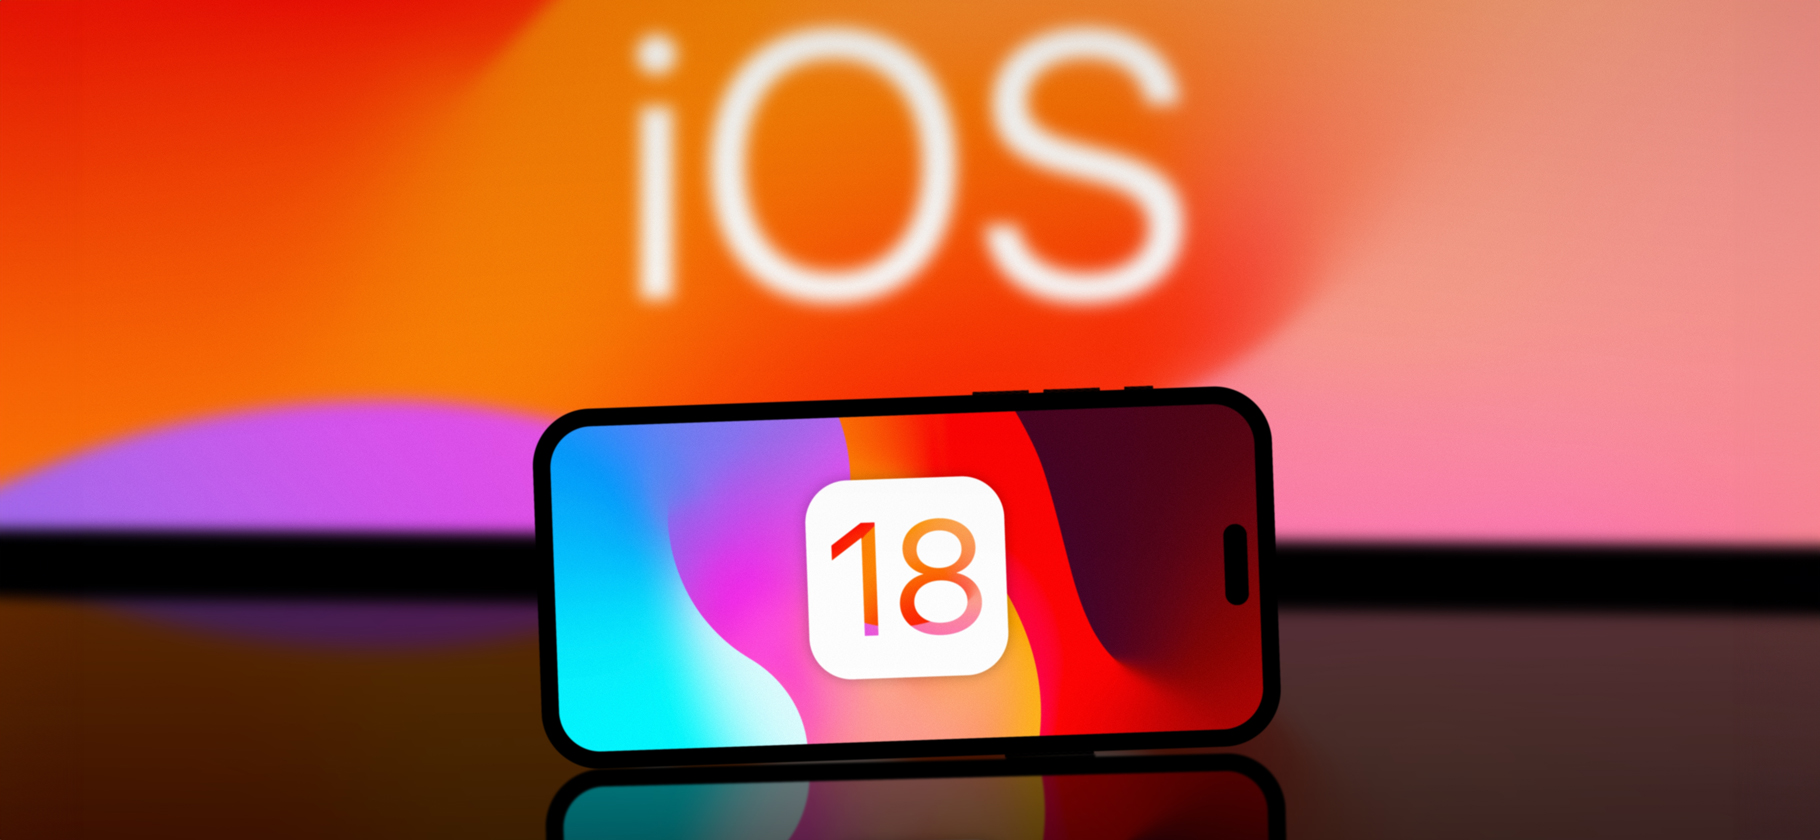 Apple представила iOS 18 с нейросетями, новой Siri и кастомизацией домашнего экрана: главное